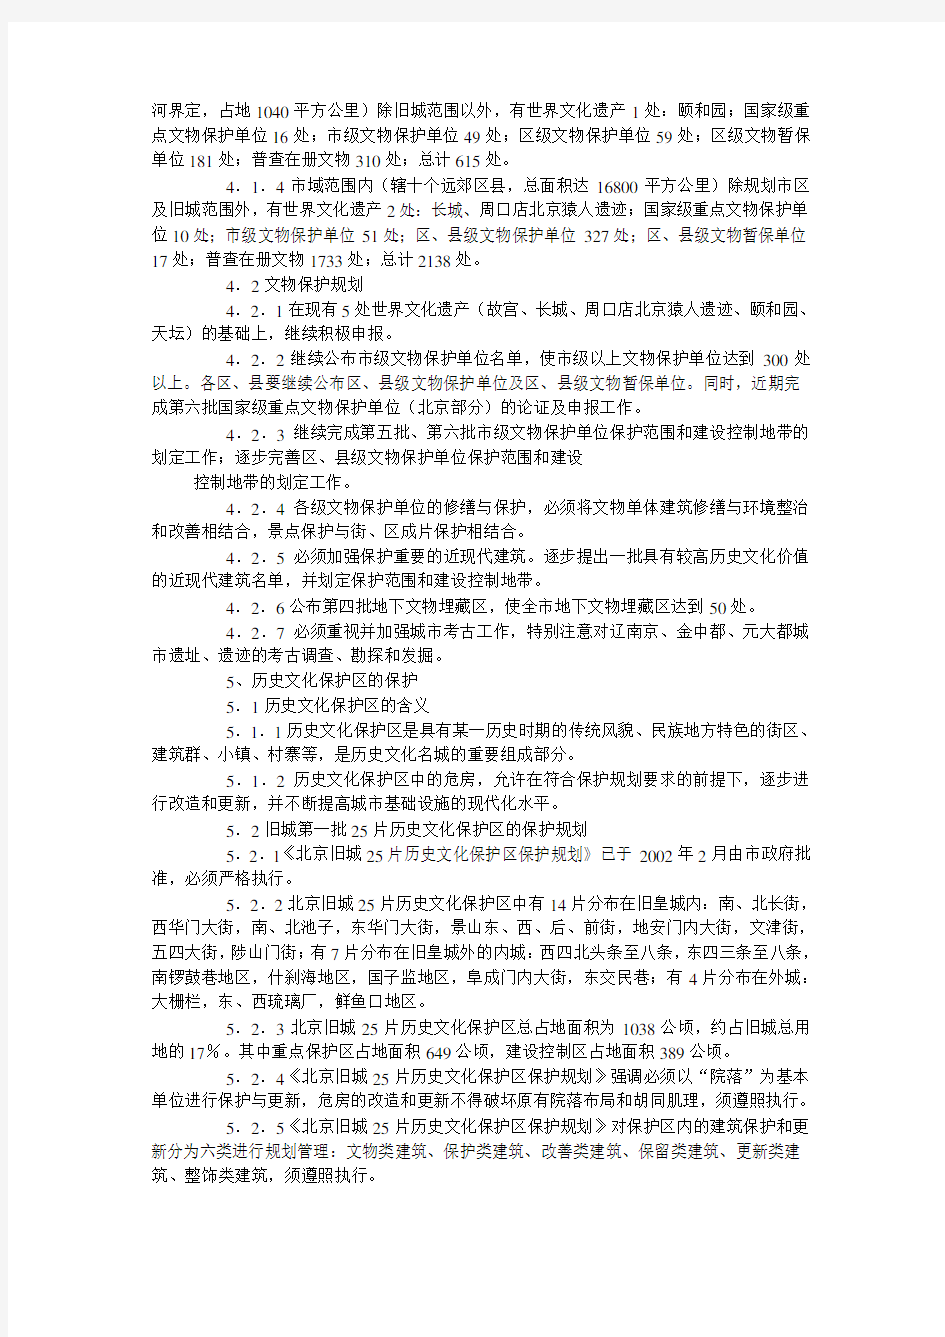 《北京历史文化名城保护规划》